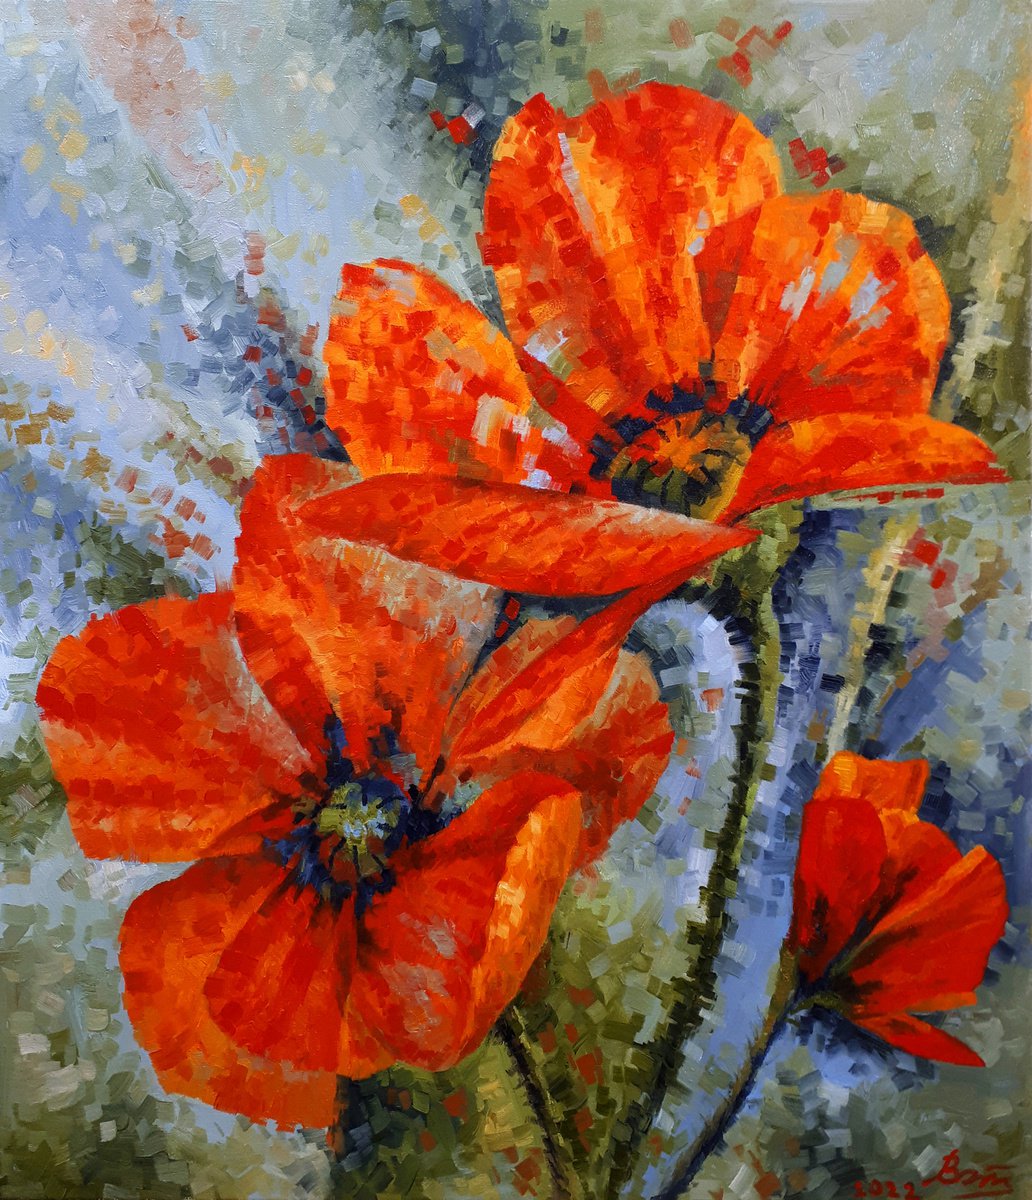 Orange Poppies by Serhii Voichenko